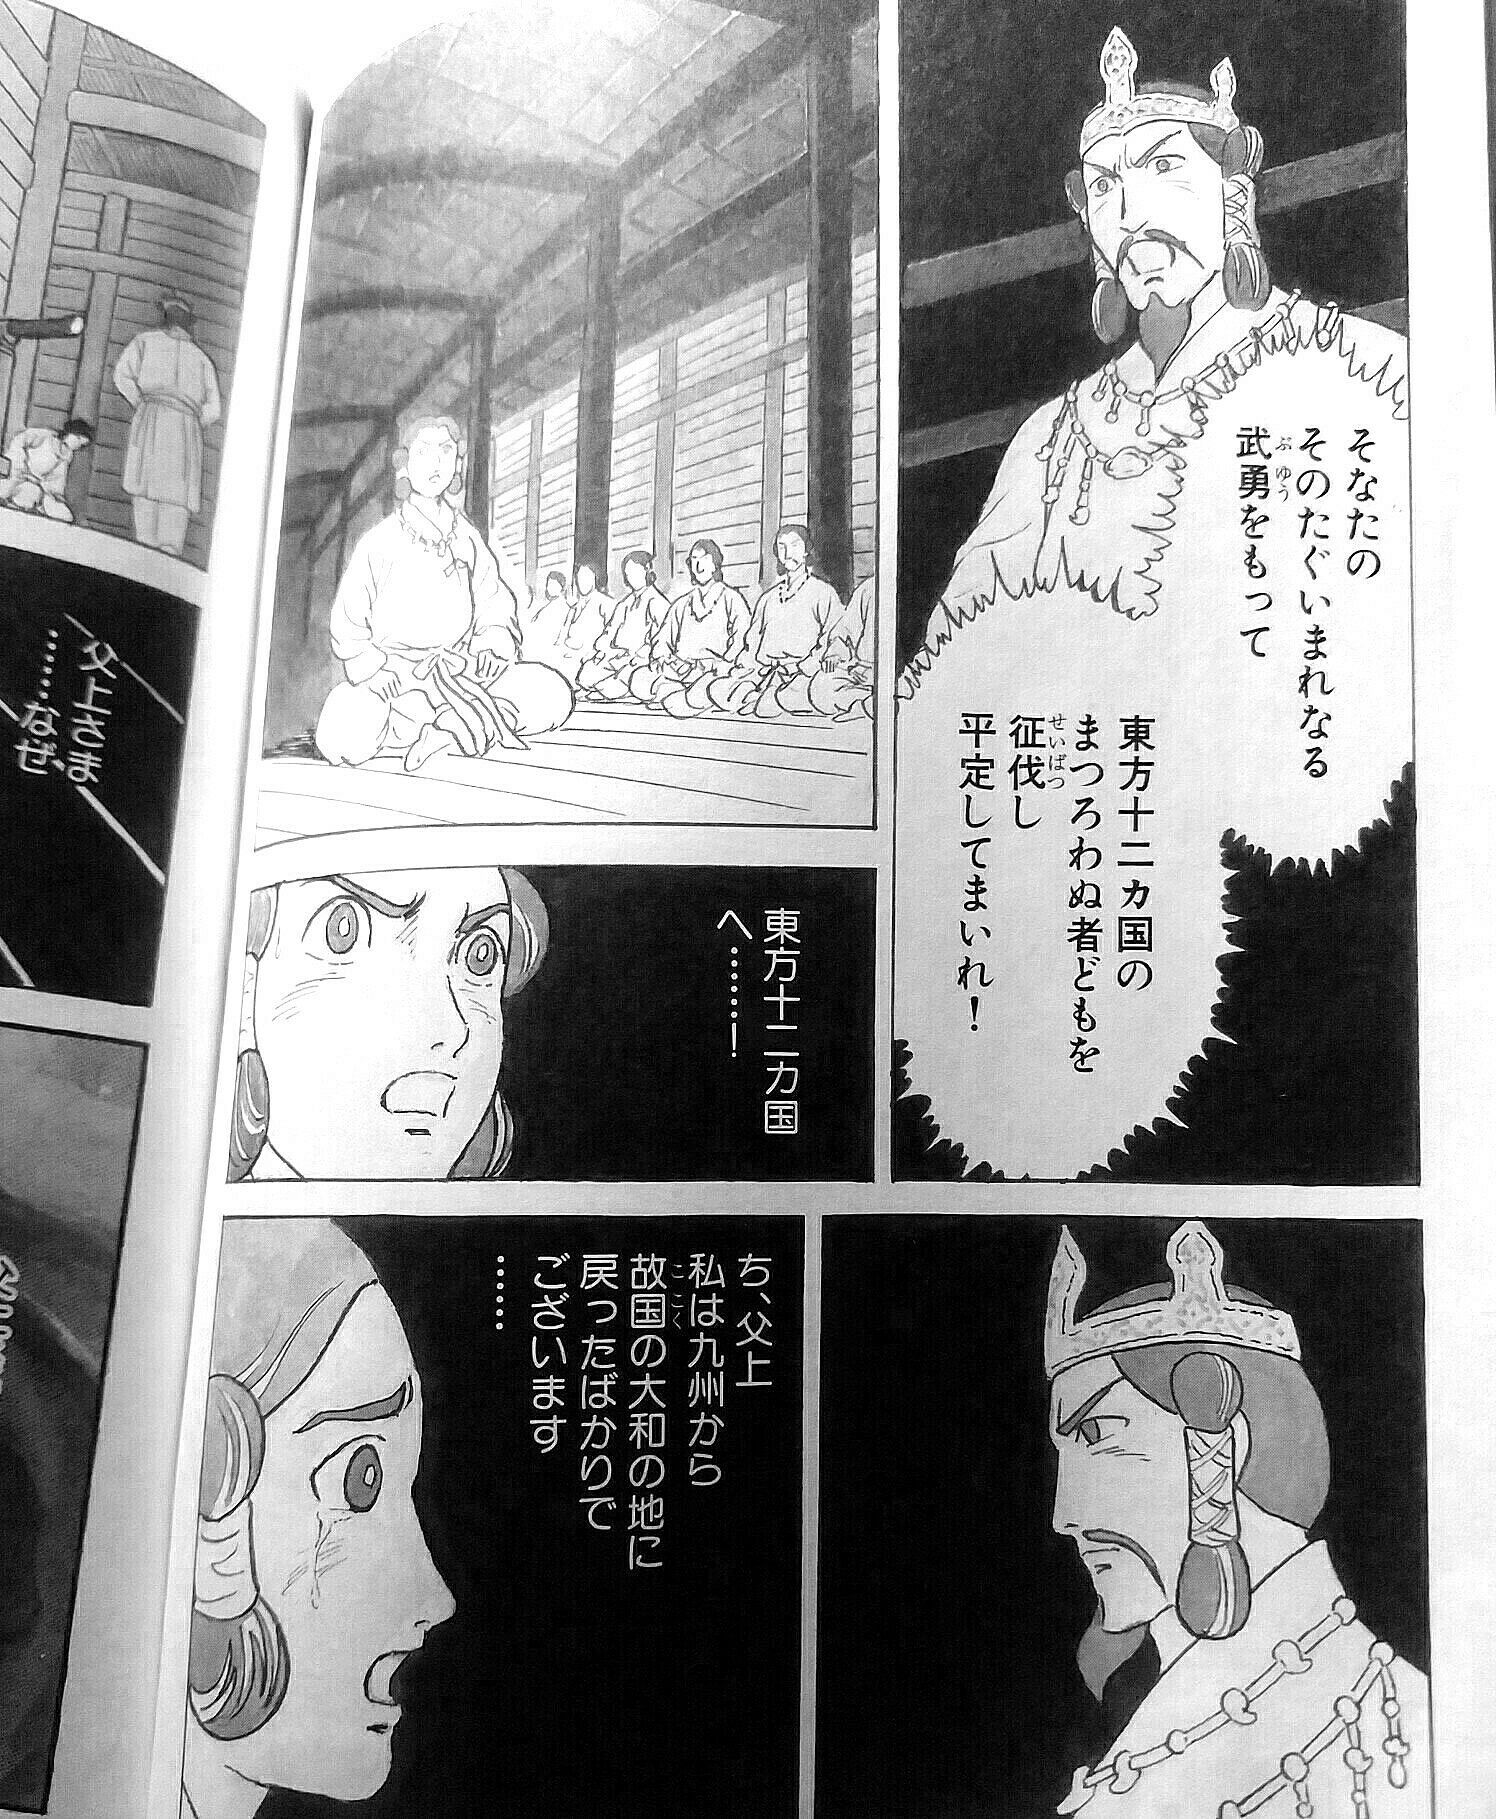 漫画 日本武尊 ブルートレインも 国鉄型も 動く寺子屋のガンバレール９学塾 楽天ブログ